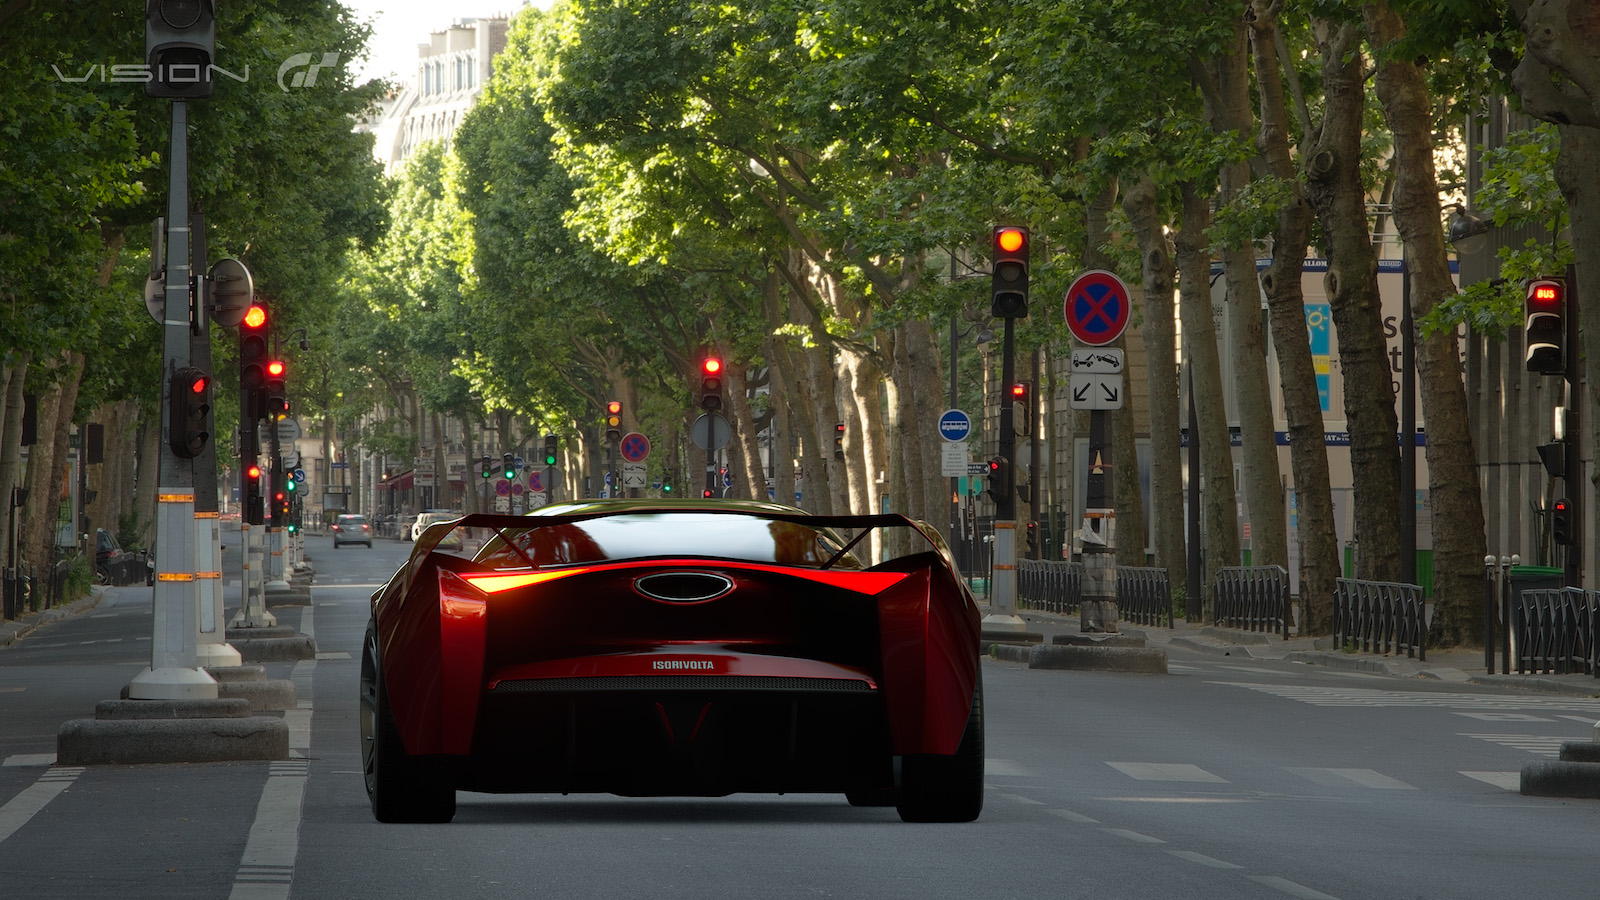 Zagato's IsoRivolta Vision Gran Turismo is designed for virtual